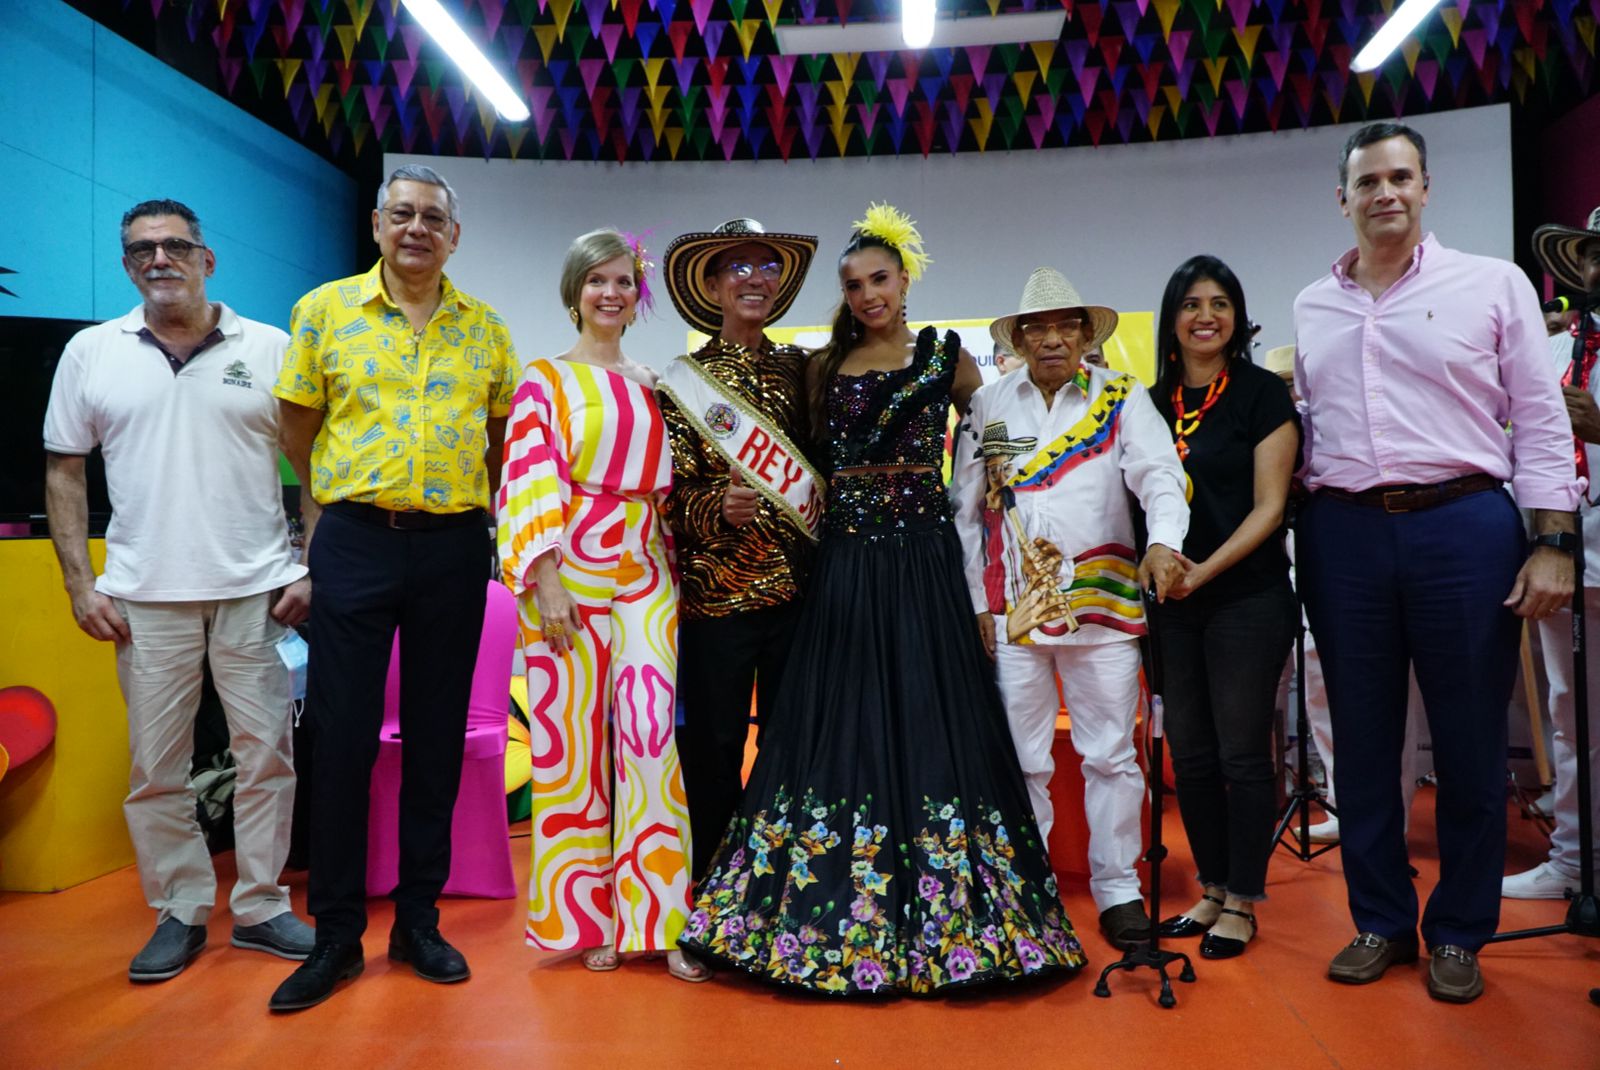 Pin en Disfraces Carnaval 2015 chicos